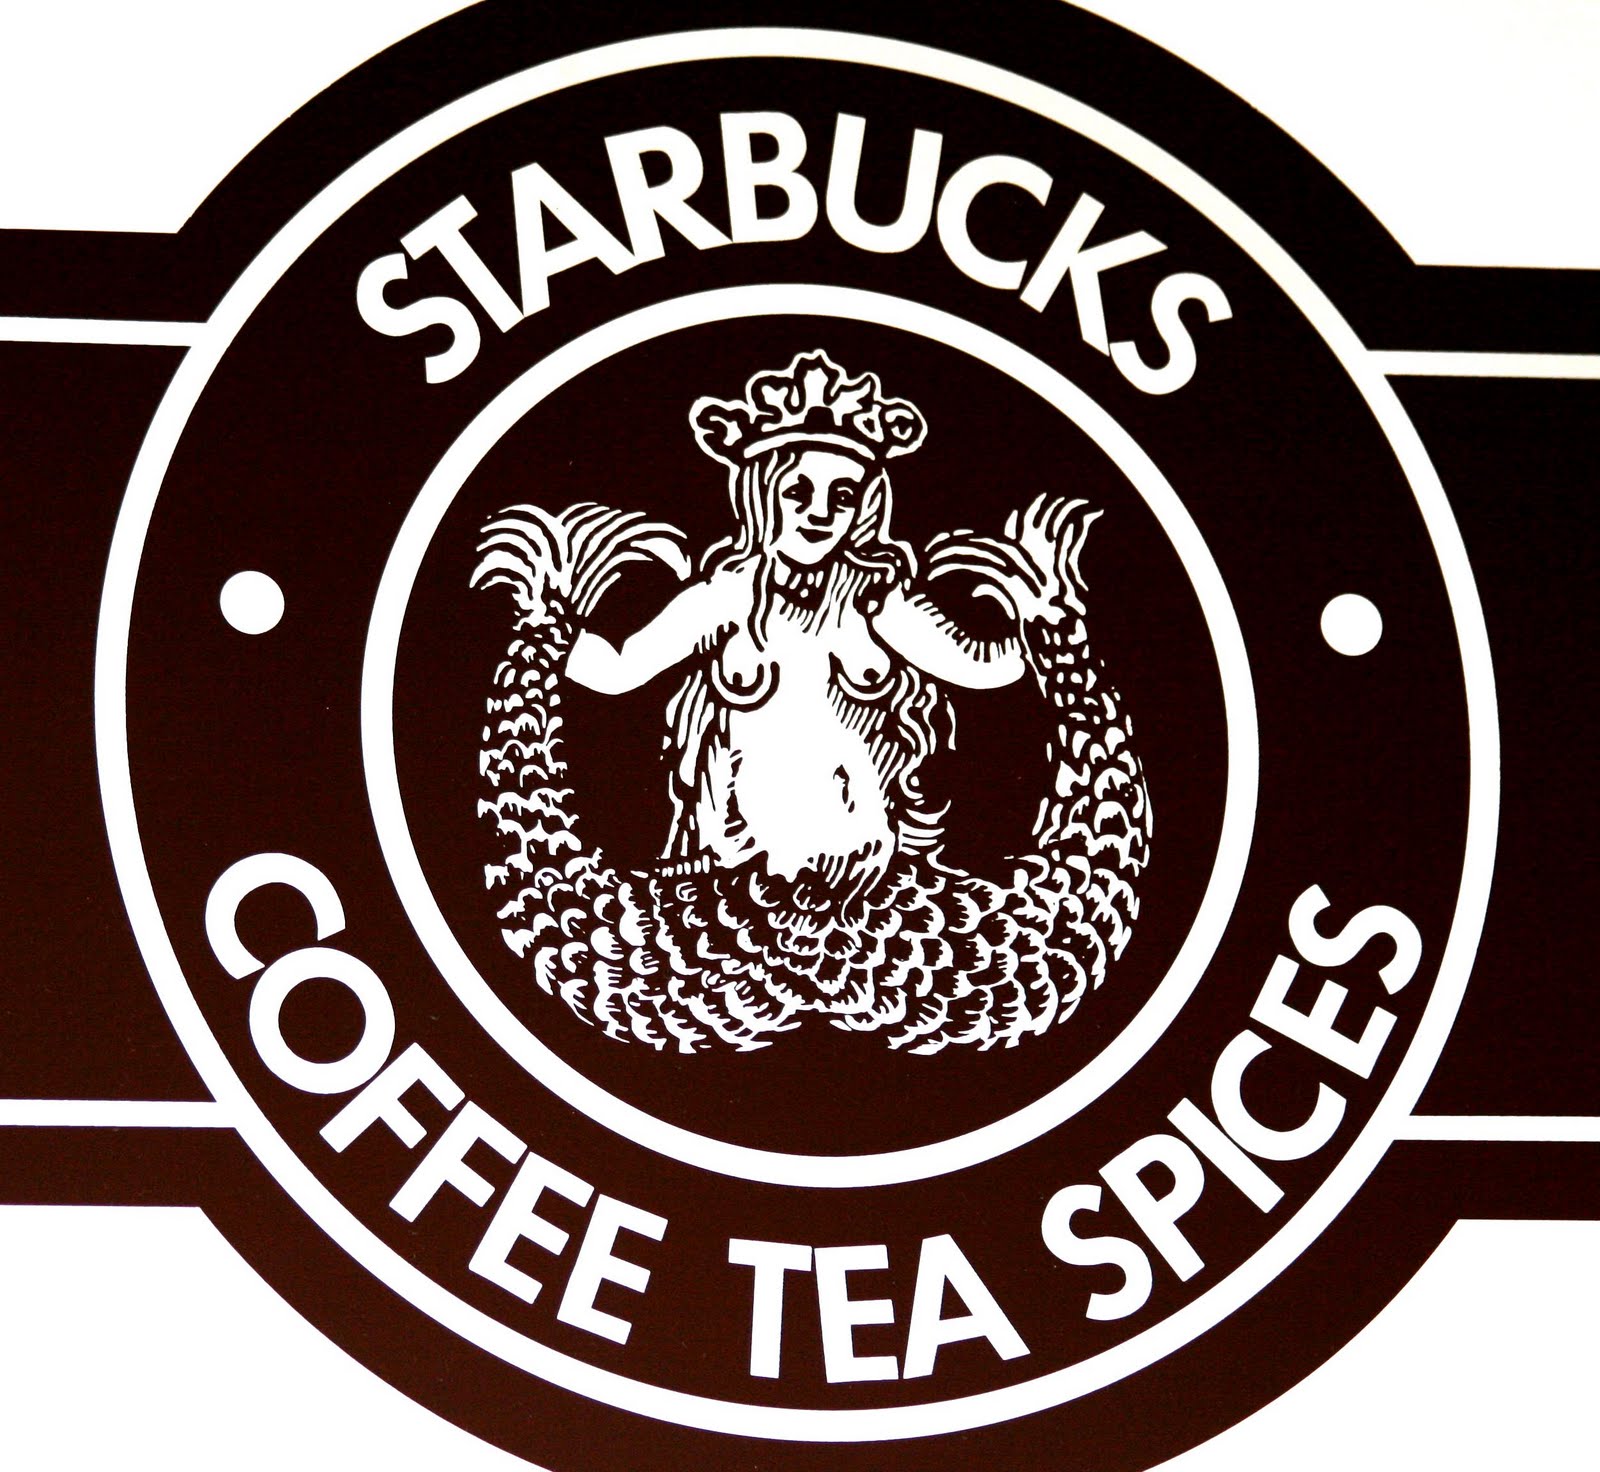 media-starbucks-logo1.jpg